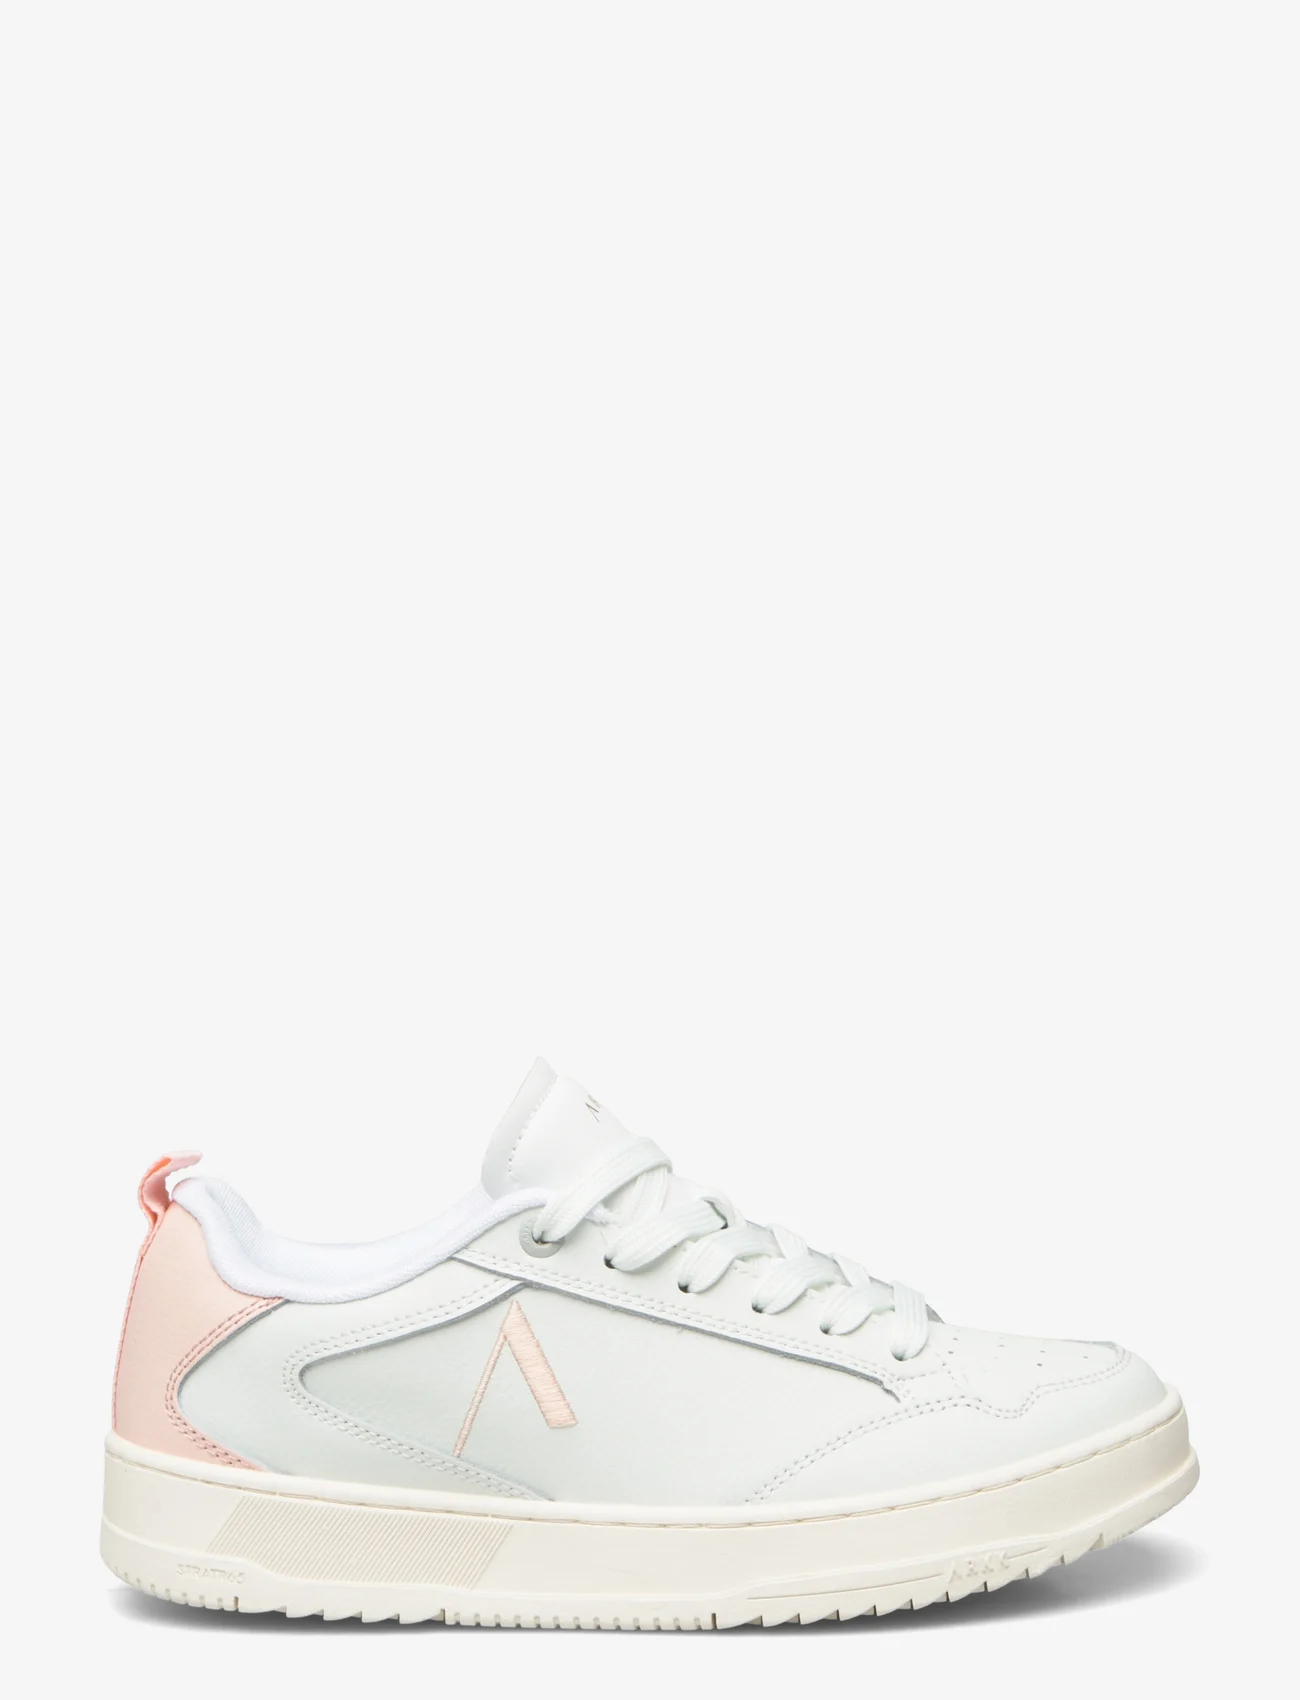 ARKK Copenhagen - Visuklass Leather Stratr65 White Soft Pink - Women - niedrige sneakers - white soft pink - 1